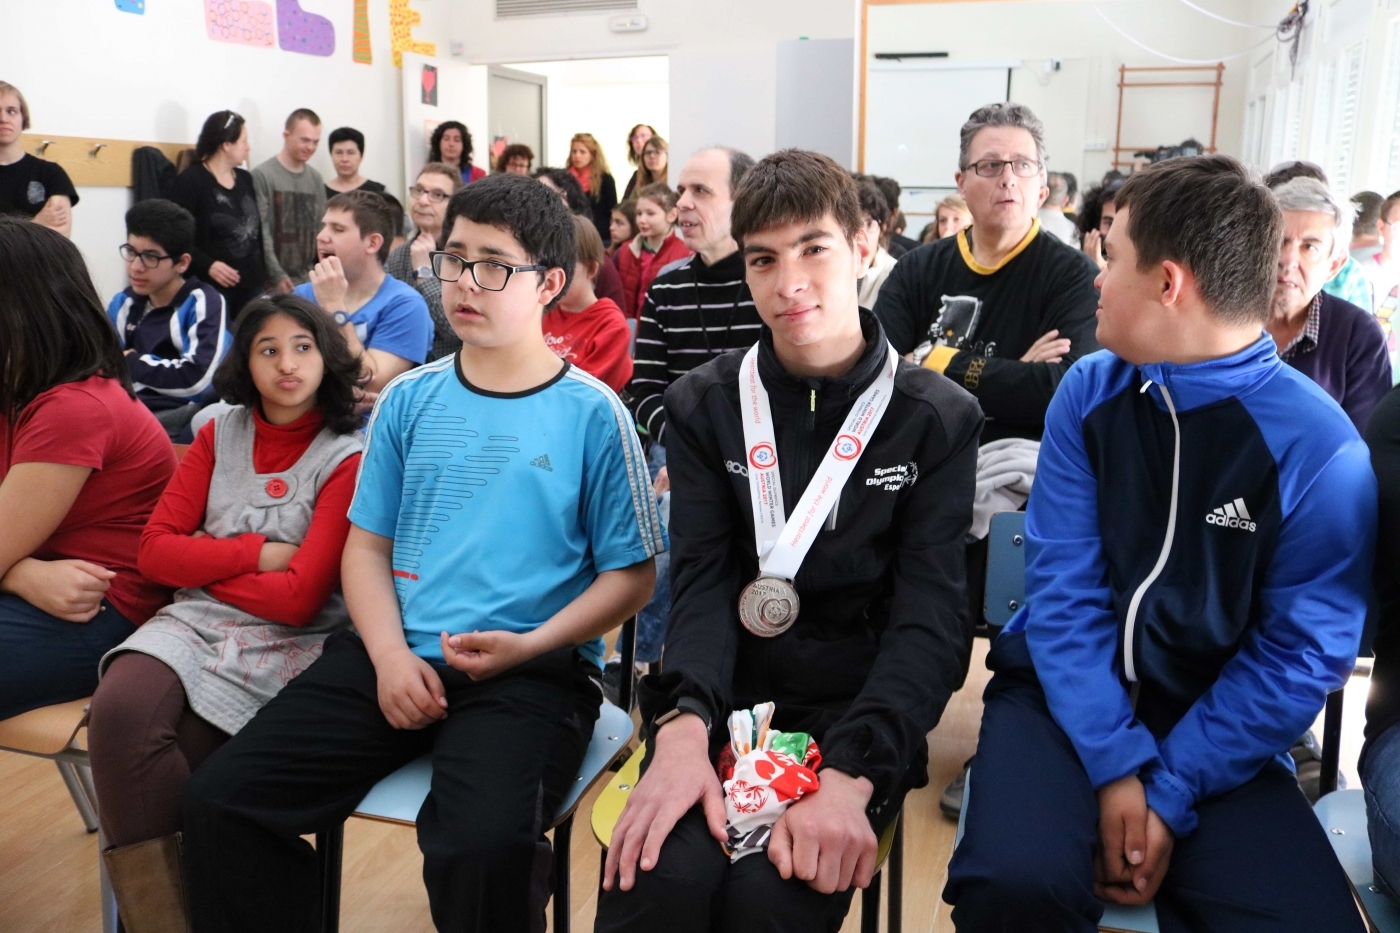 L'Associació Alba homenatja a l'esportista Pol Puiggener per la seva medalla de plata als Special Olympics